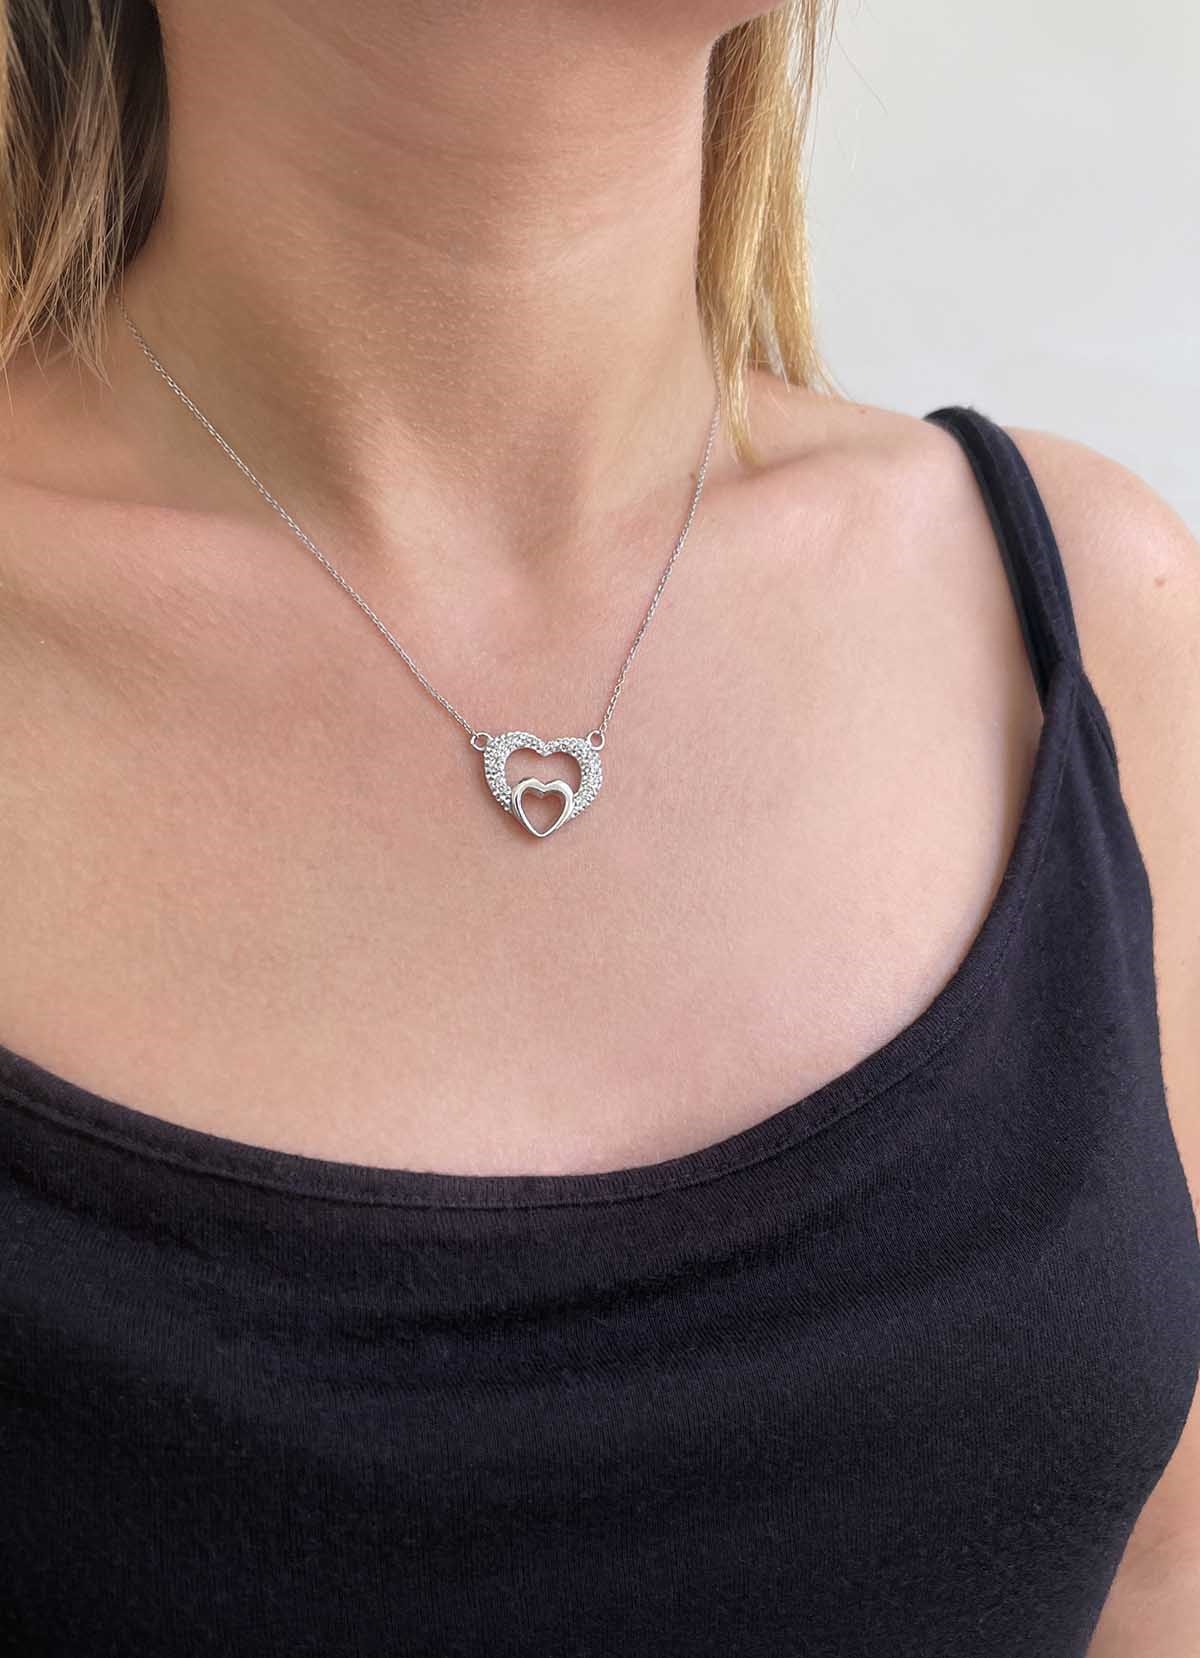 Strieborný náhrdelník s krištáľmi Swarovski biele srdce 32032.1